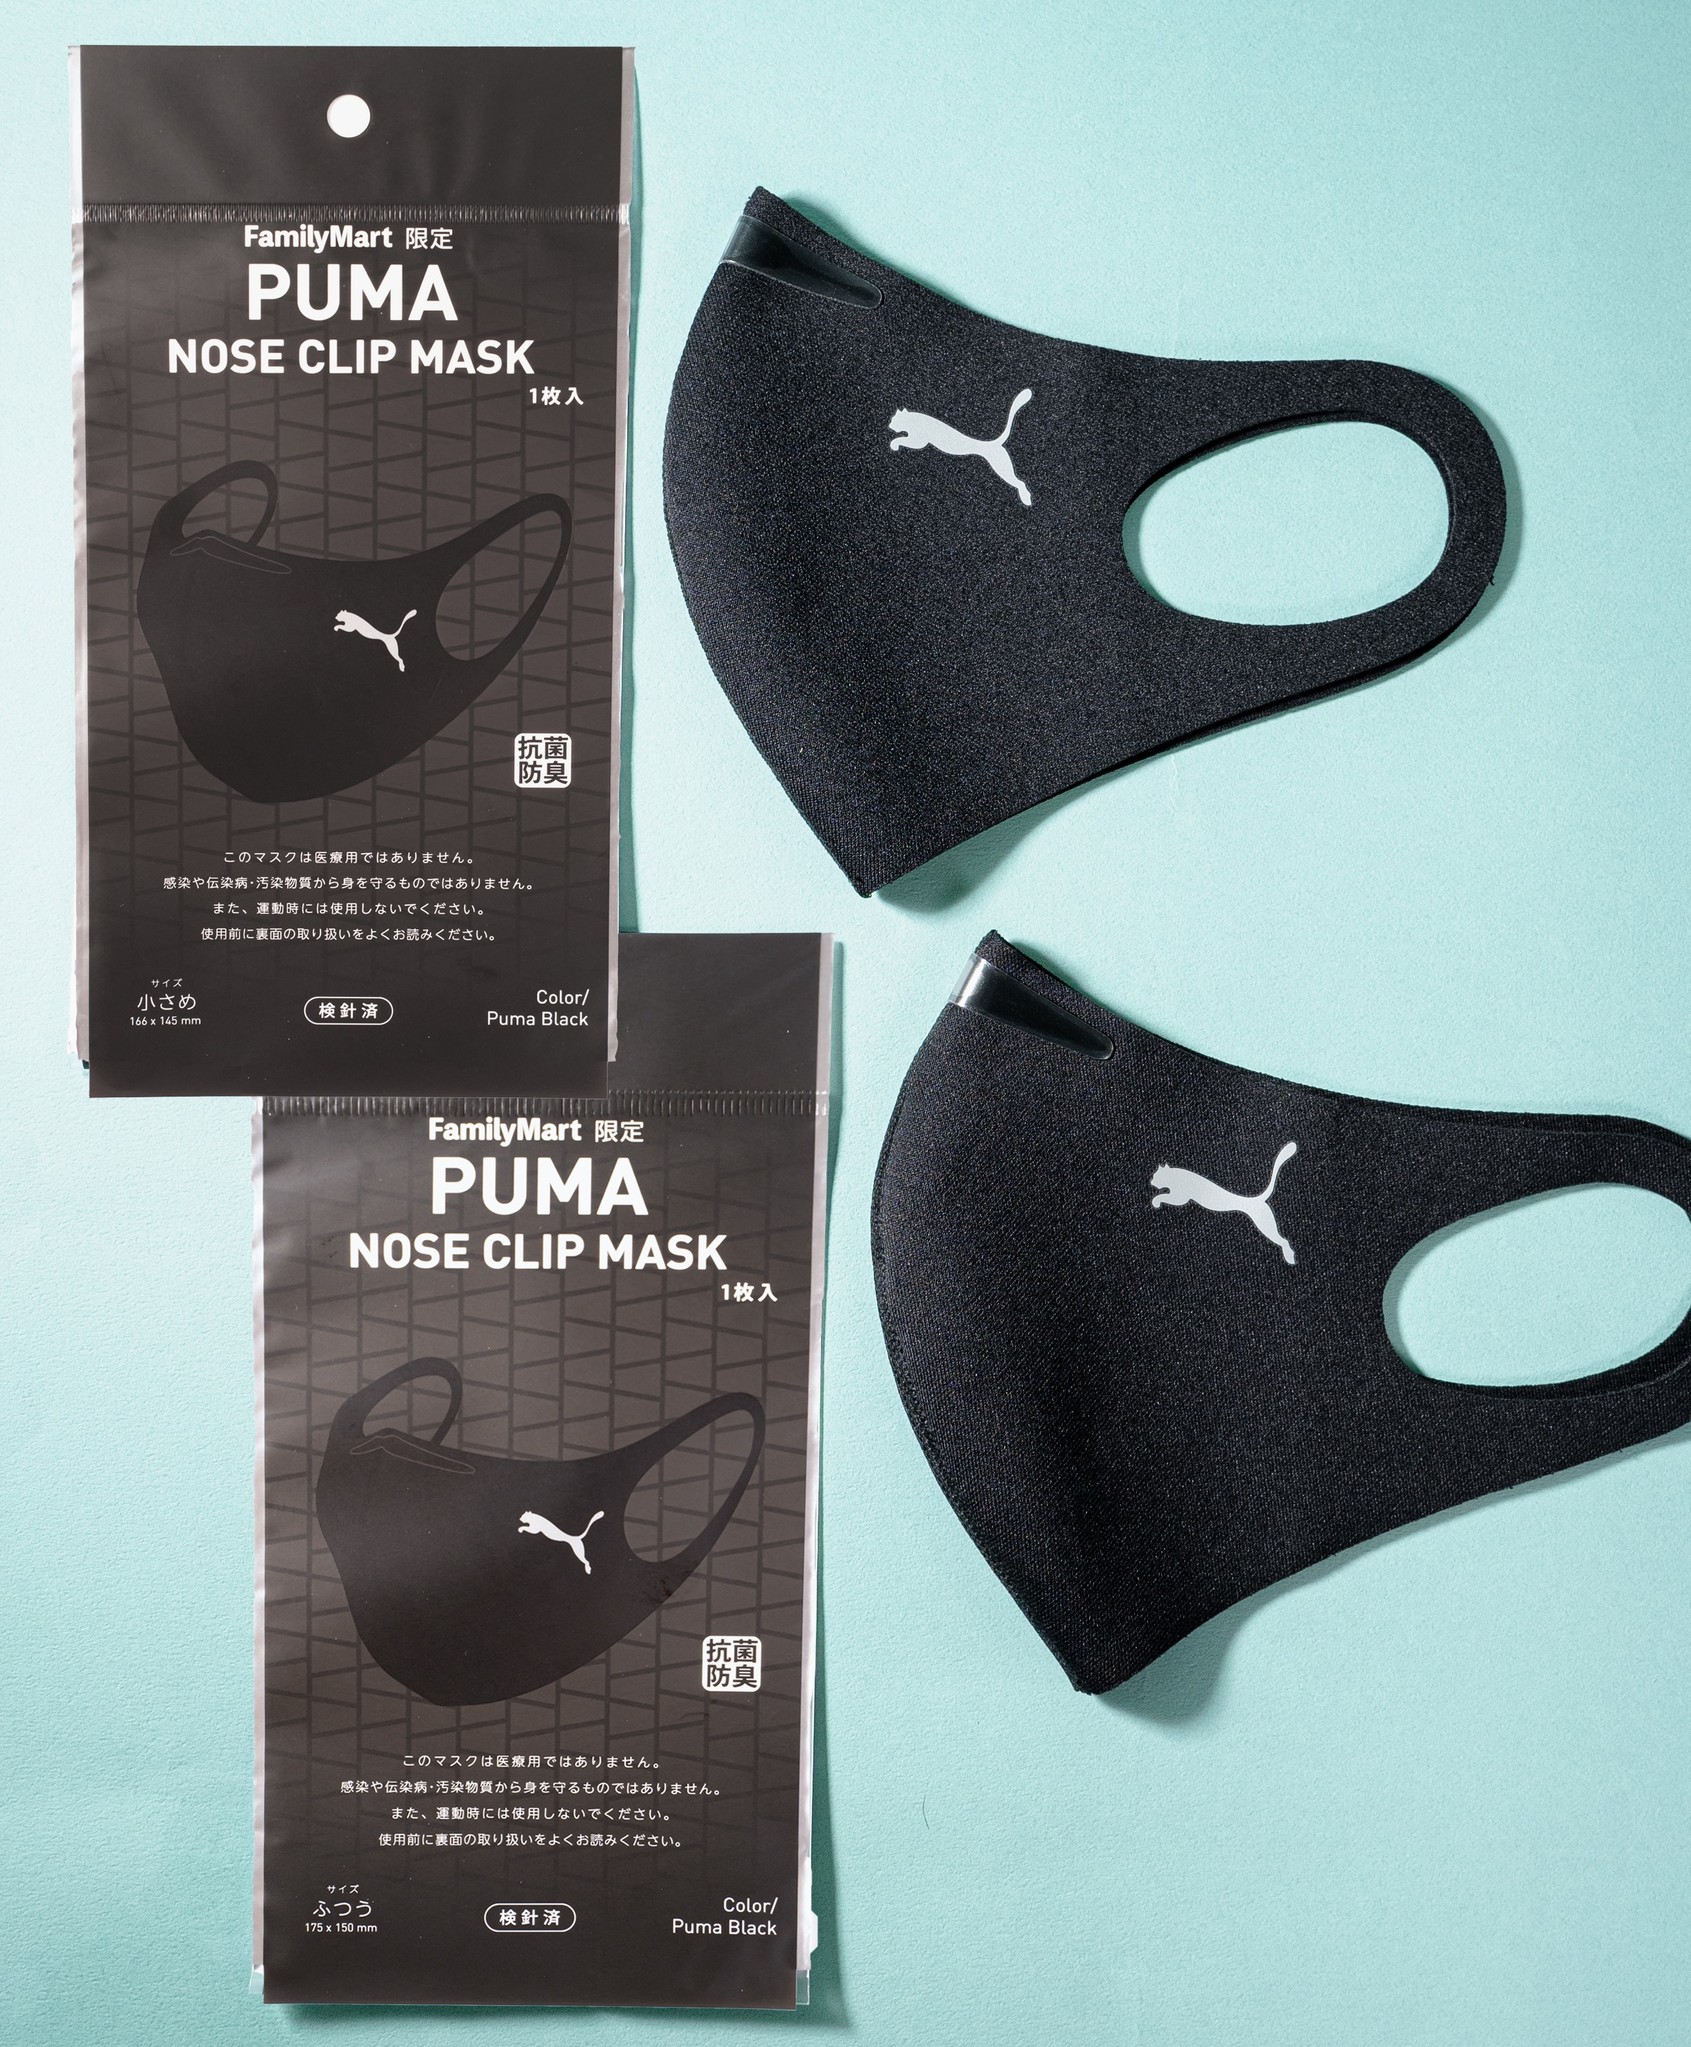 ファミリーマート限定！スポーツブランド「PUMA」のロゴ入りマスクがリニューアル！～累計販売数200万枚突破！大人気マスクが再登場